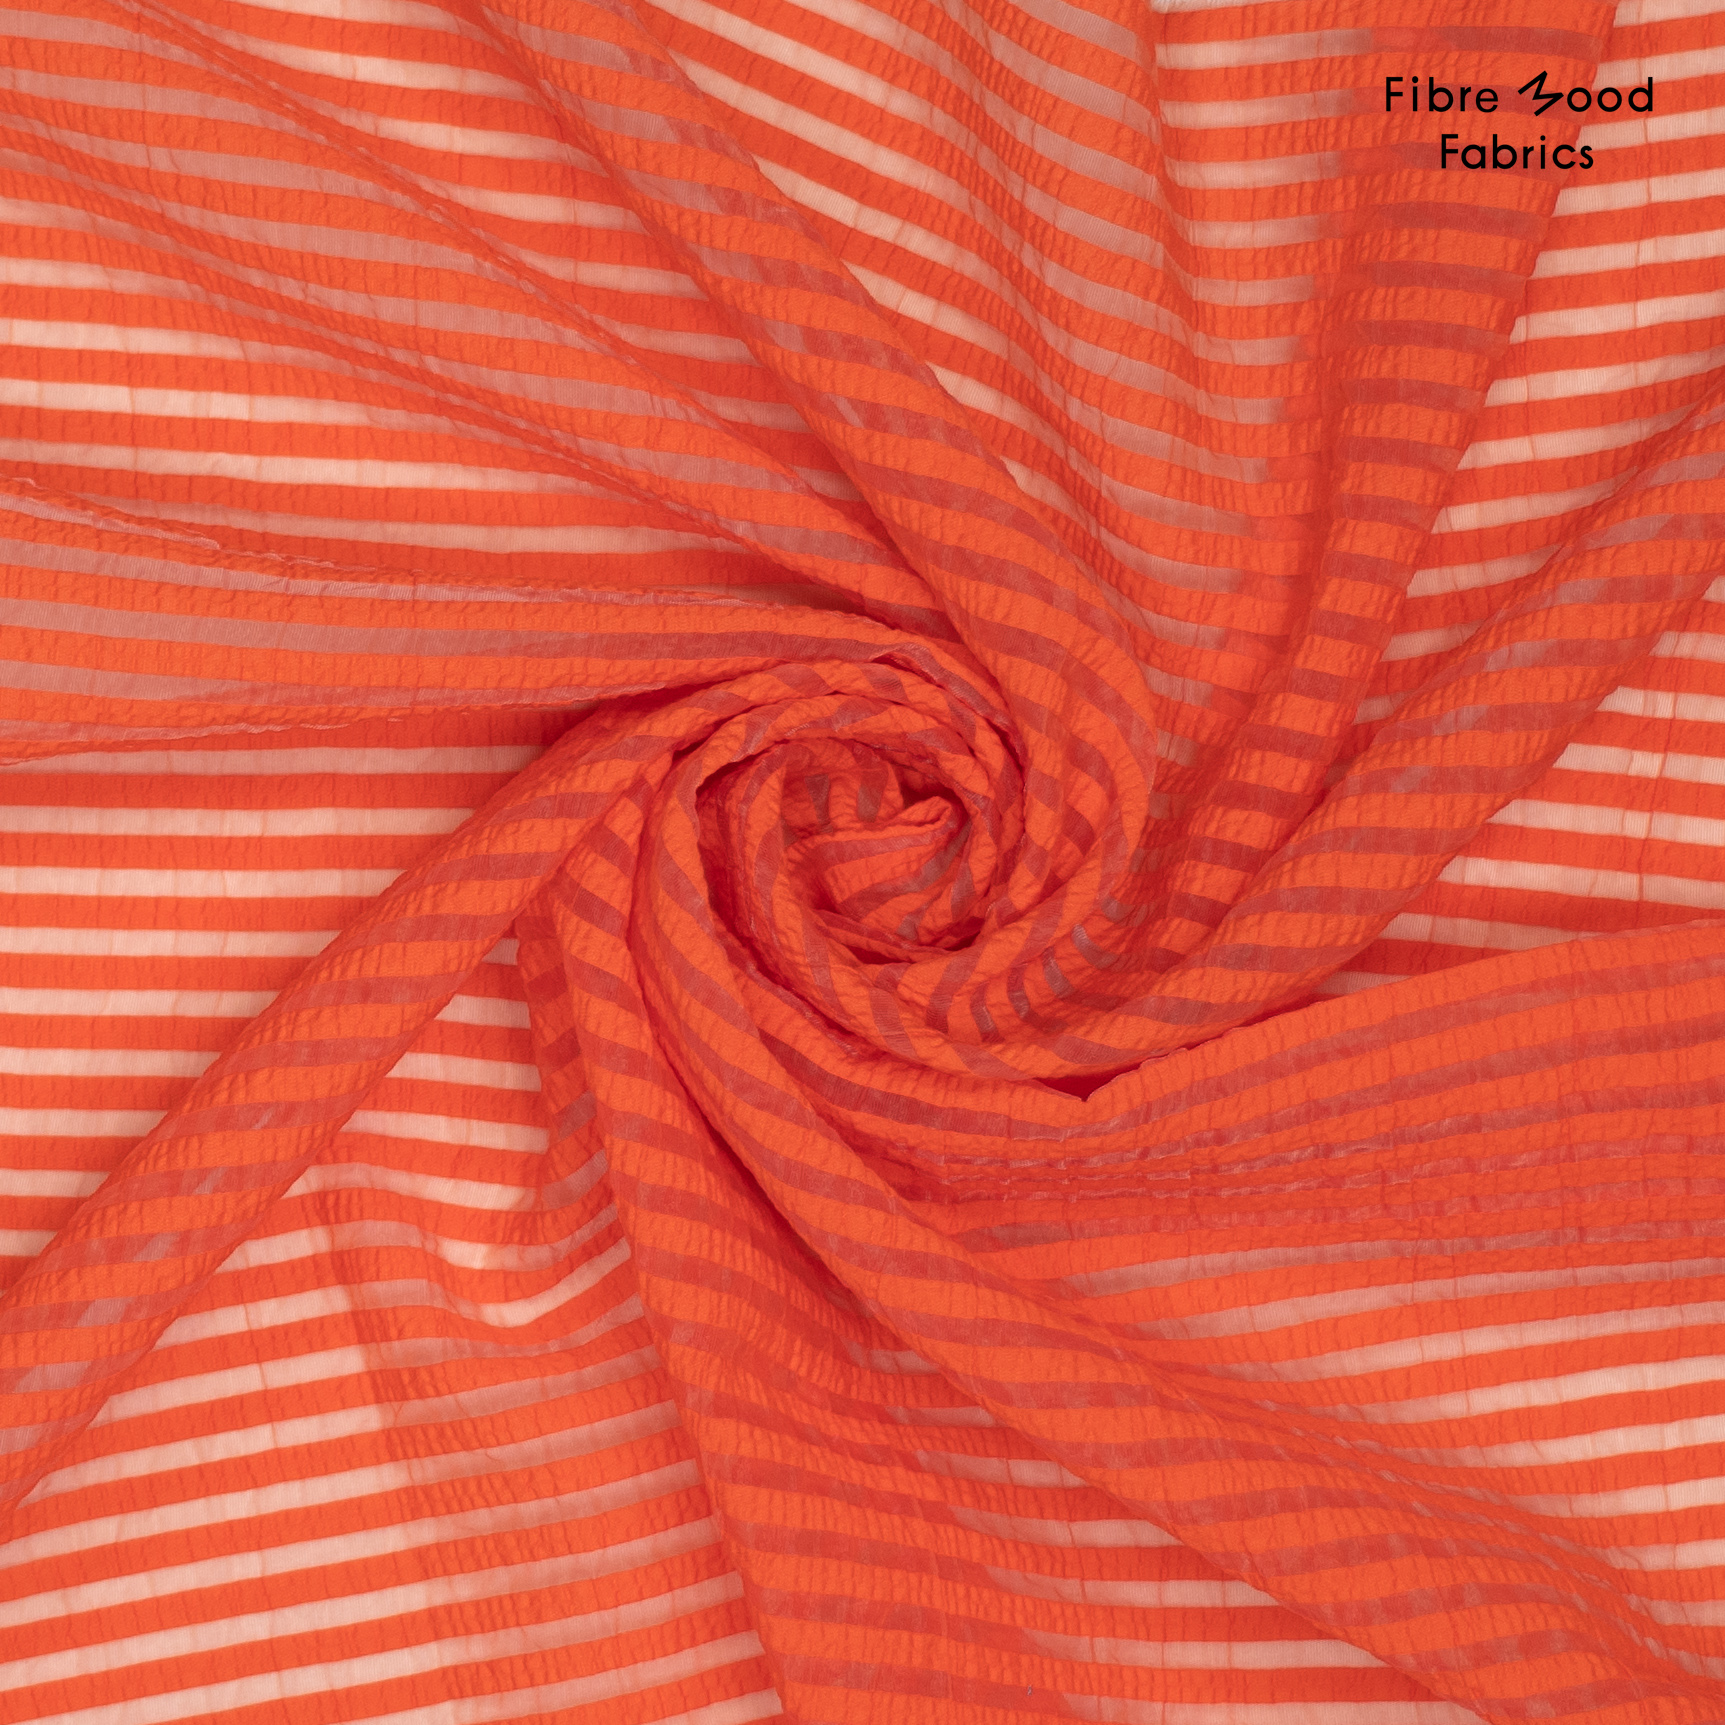 Fibre Mood "Nona", Schicke Streifen, orange. Art. FM311044